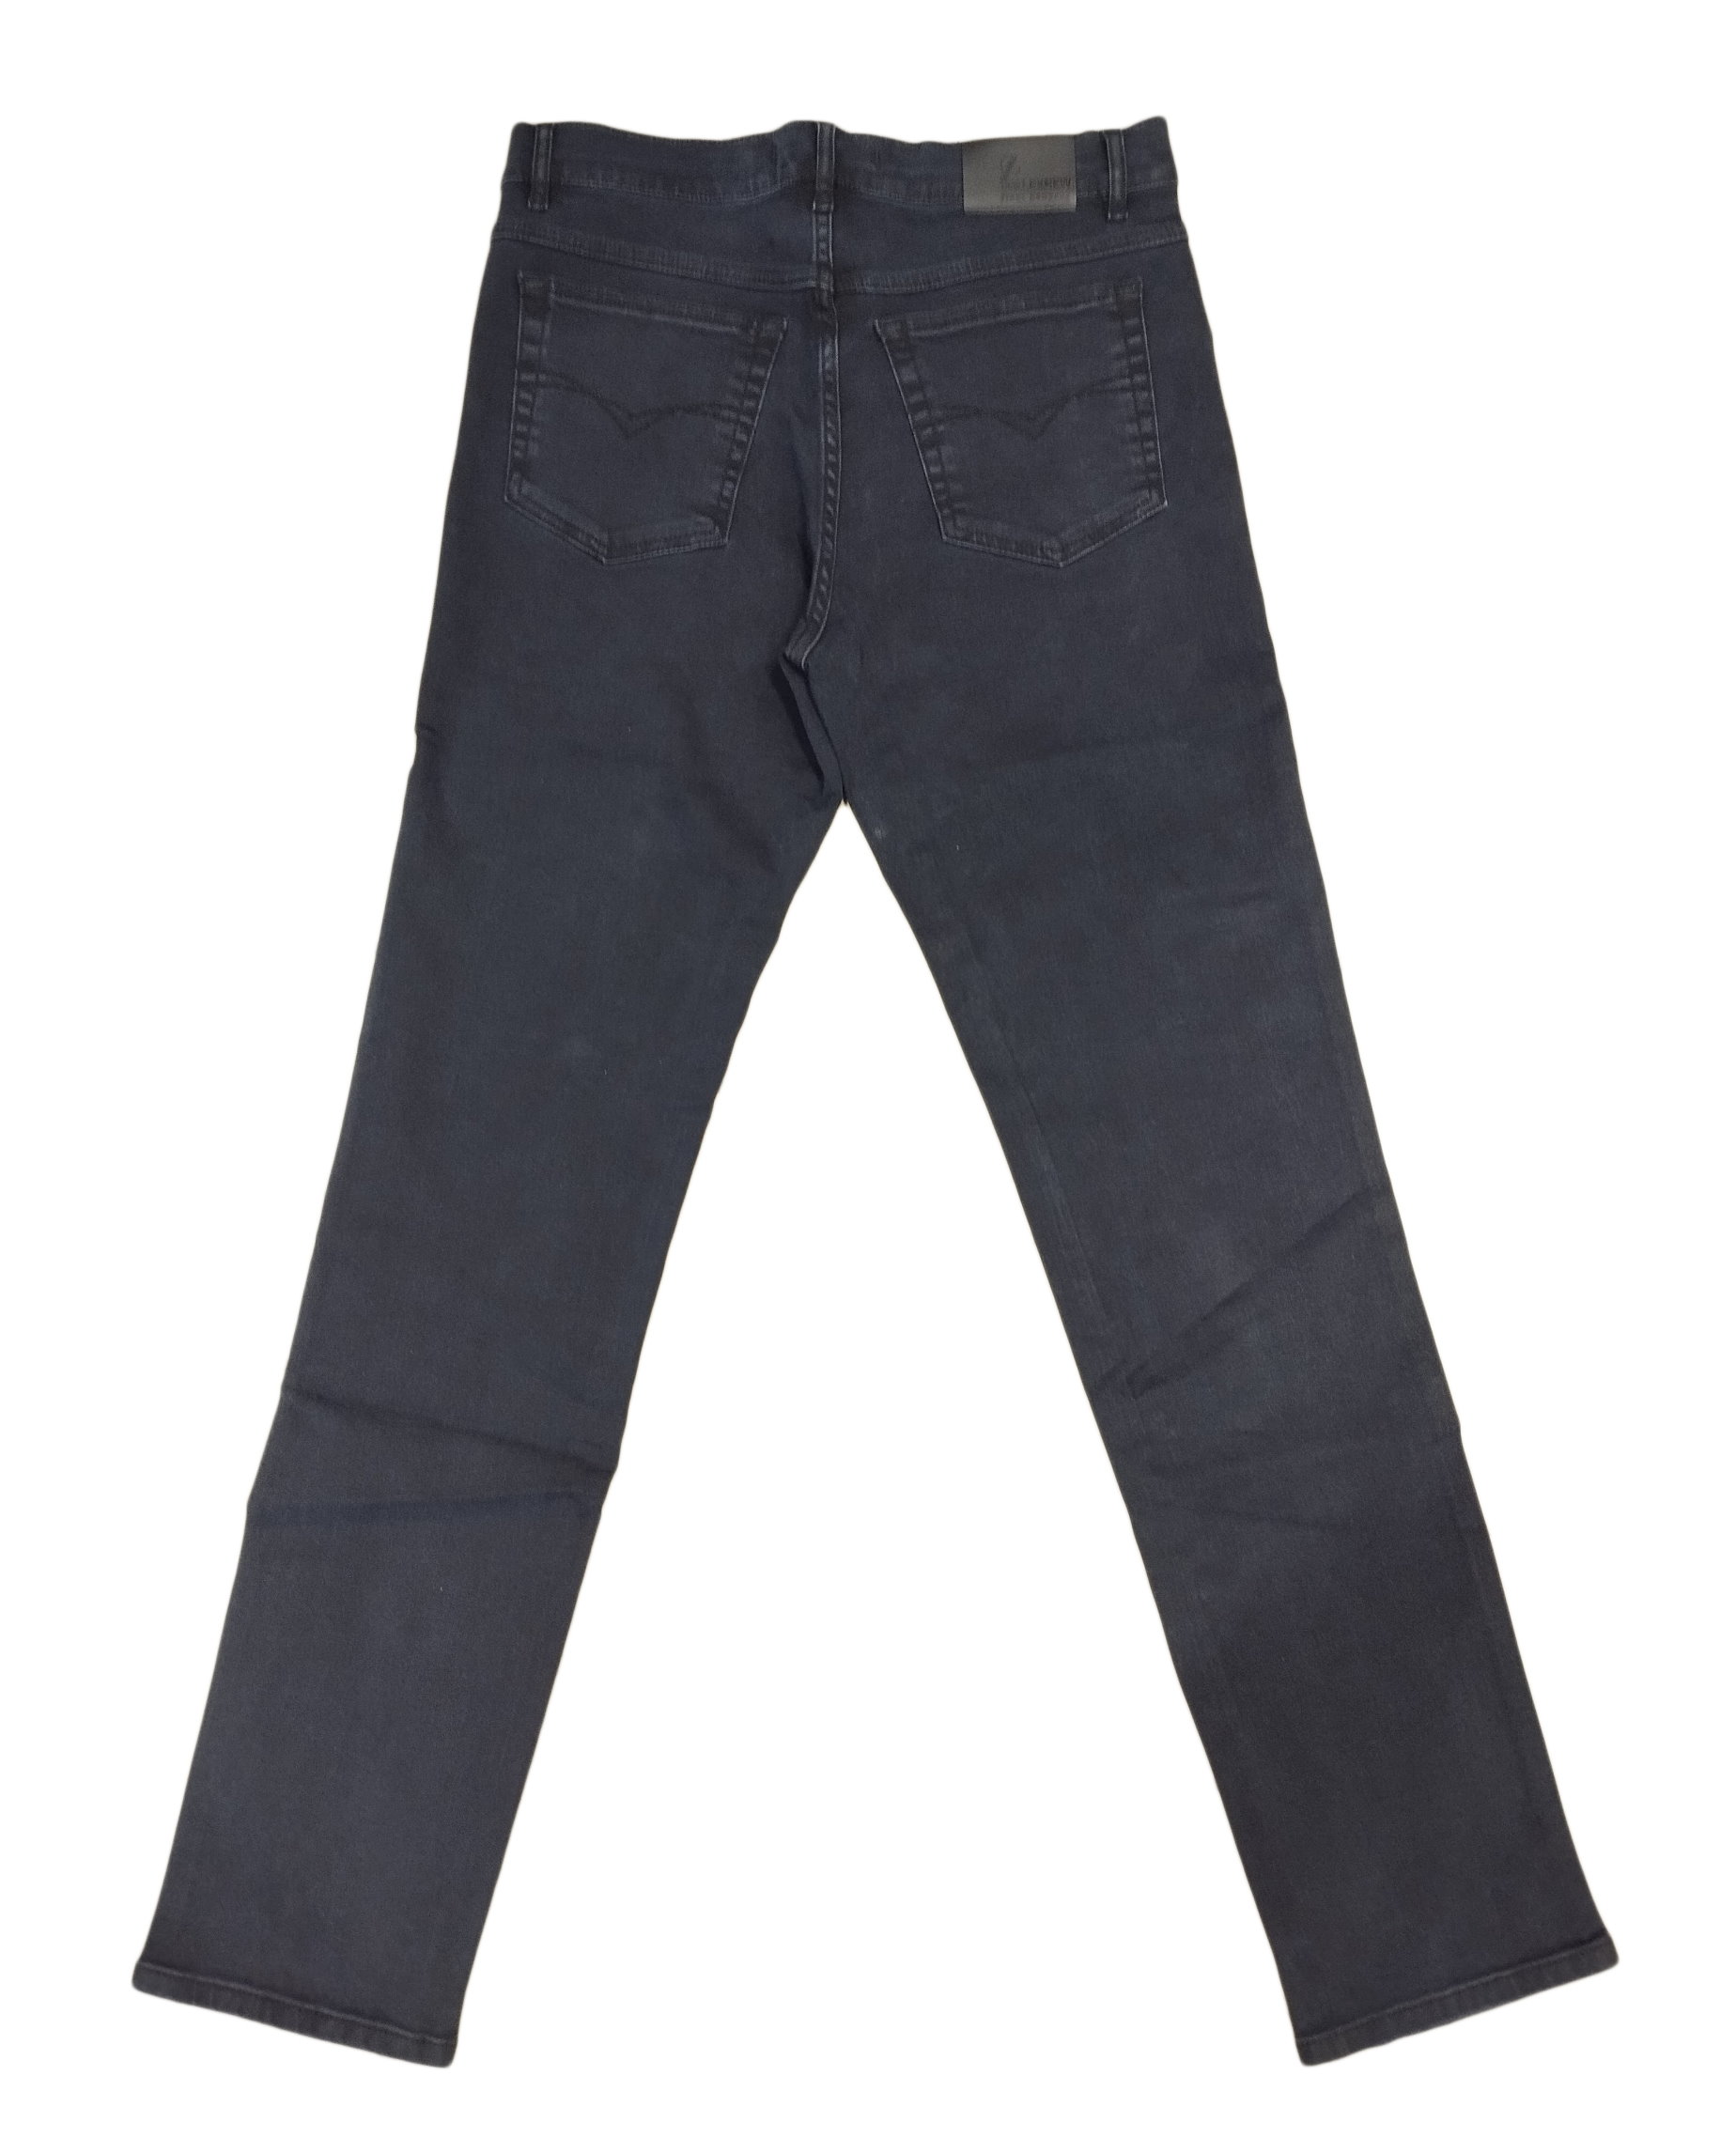 Класичні чоловічі джинси темно-сині Lexus ART-Y347 P8125